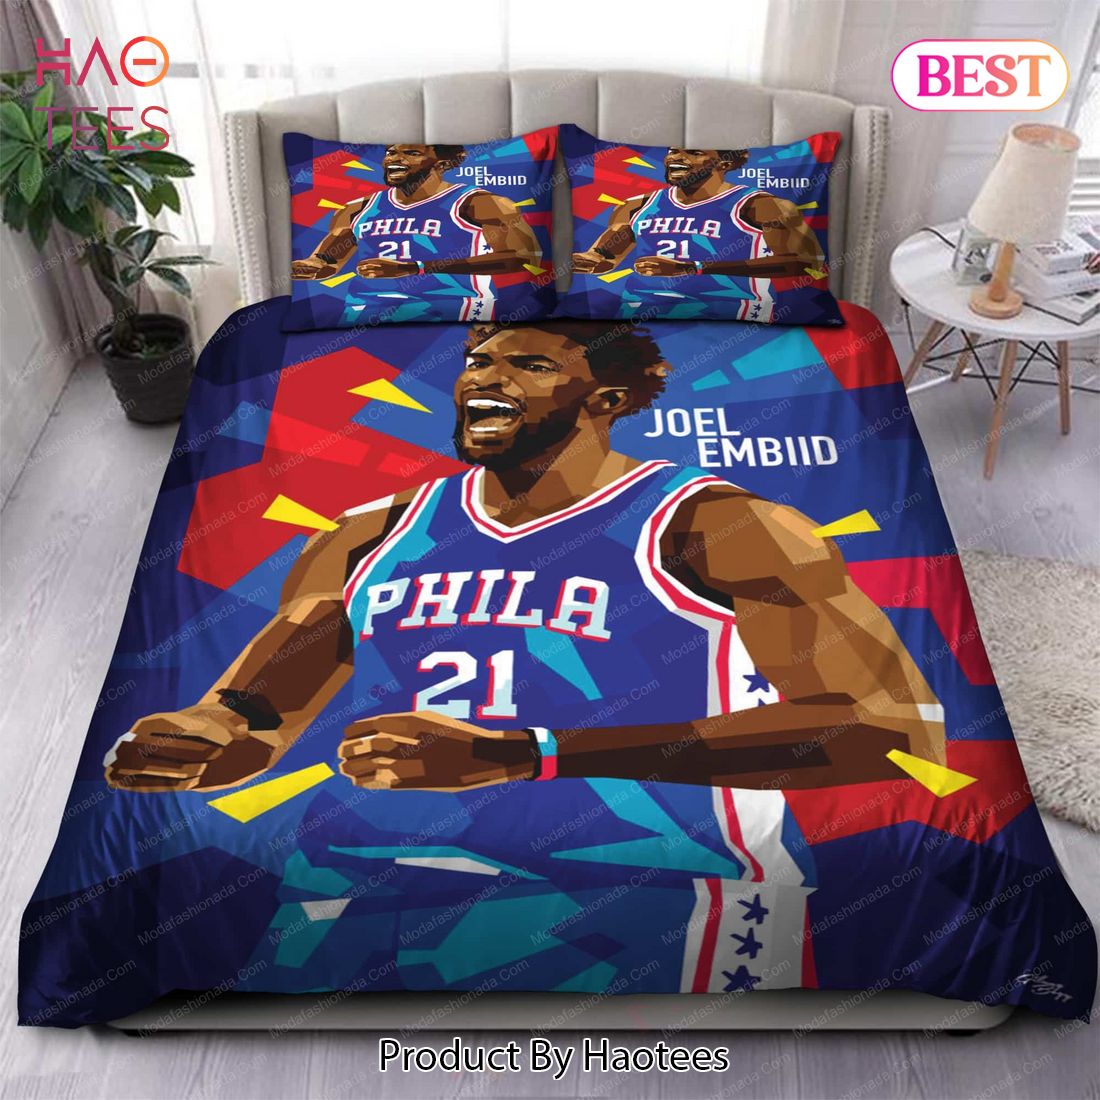 Buy Art Joel Embiid Philadelphia 76ers NBA 107 Bedding Sets Bed Sets, Bedroom Sets, Comforter Sets, Duvet Cover, Bedspread